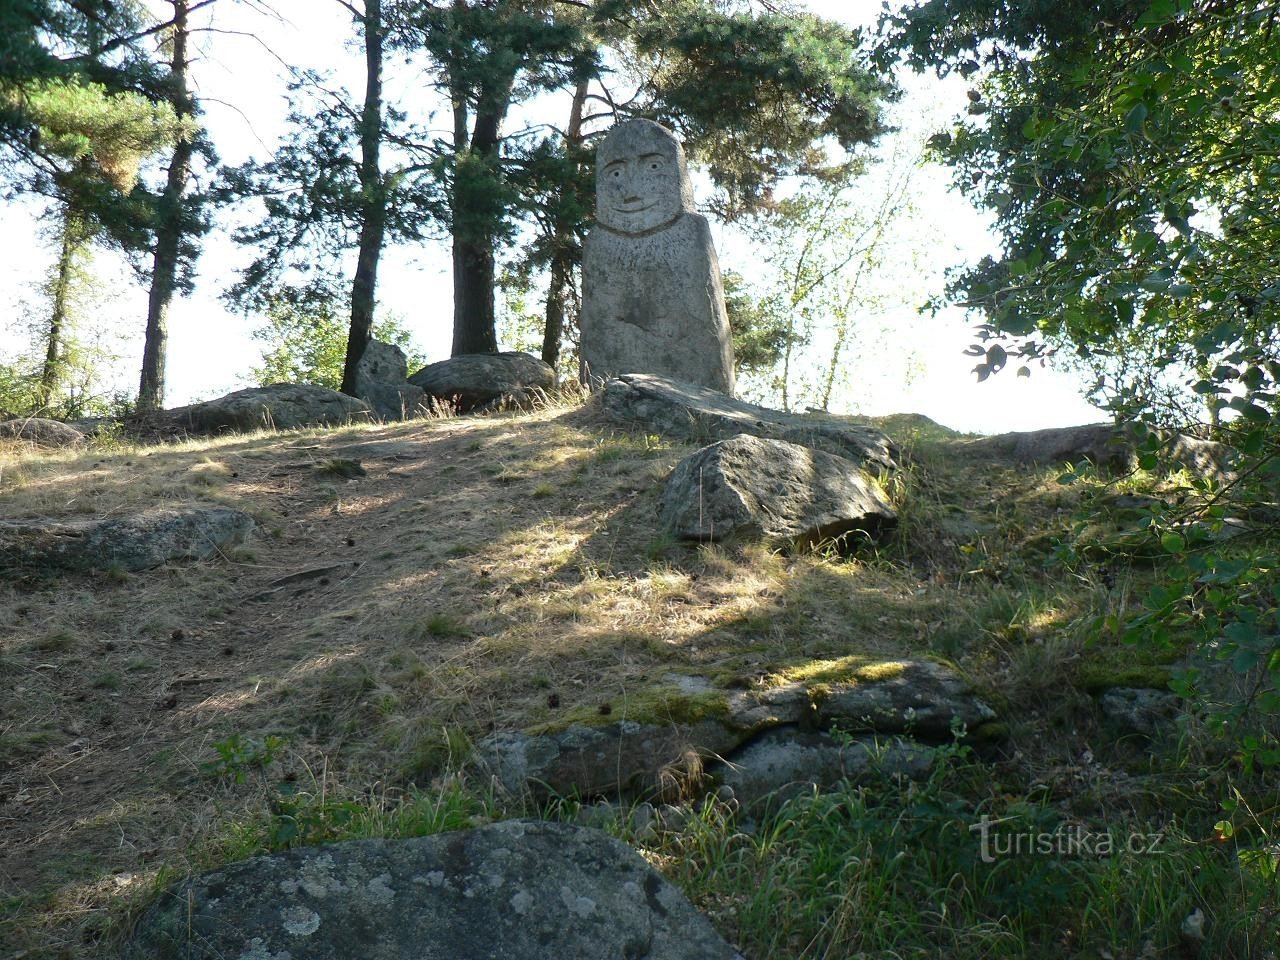 Statue of Baba at Velké Bezděkovský pond